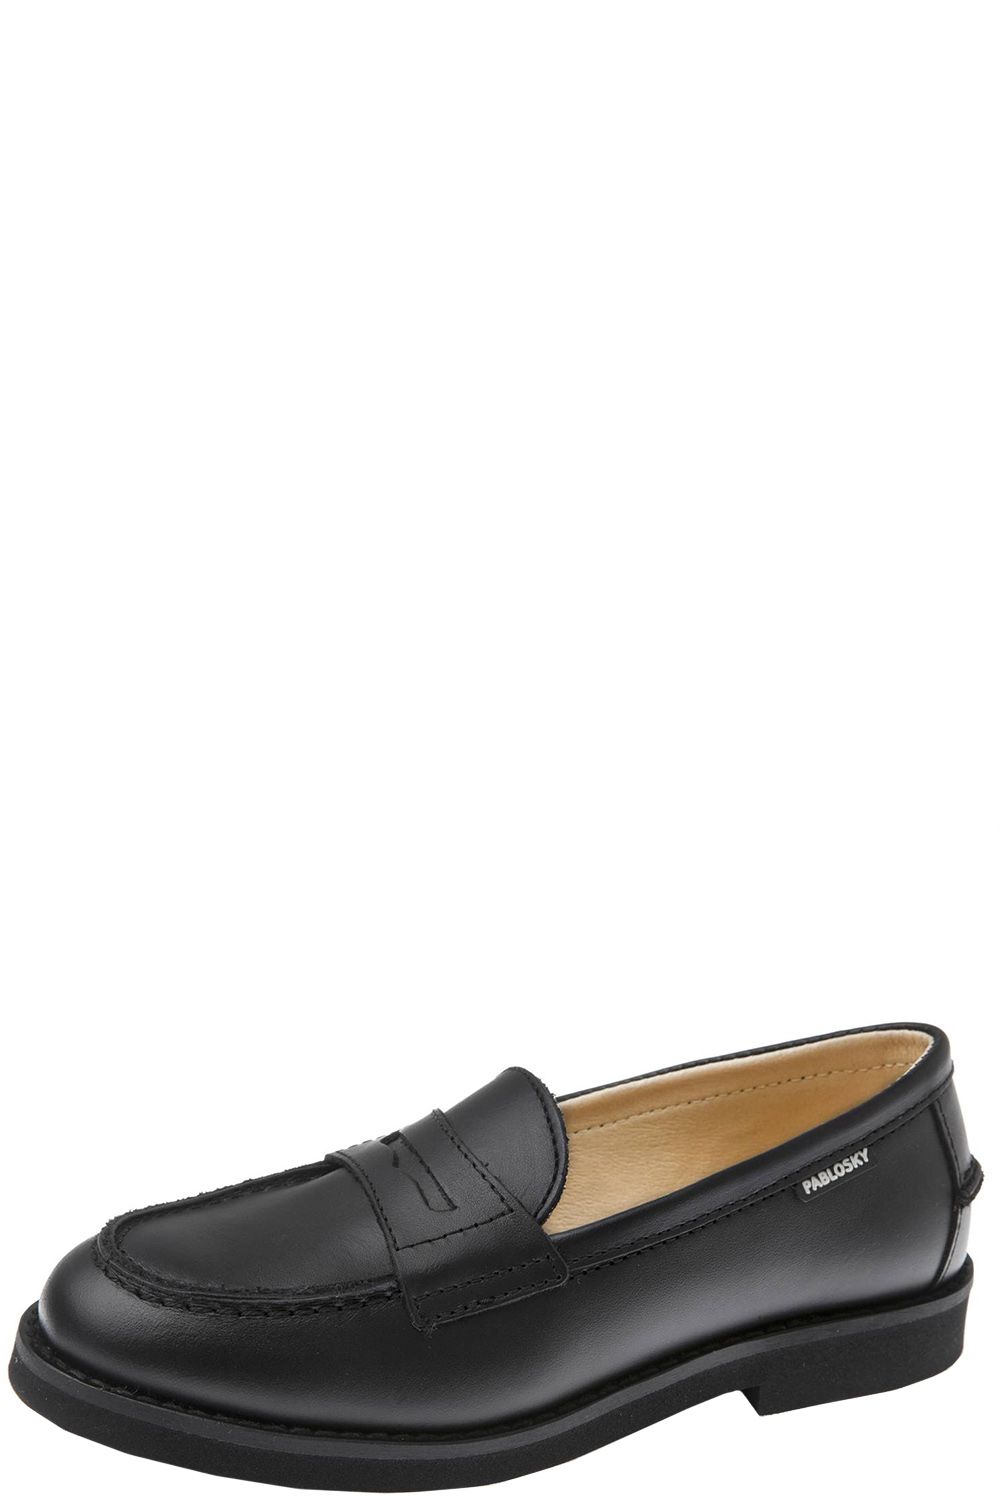 Туфли Pablosky, размер 35, цвет черный 717610 - фото 1